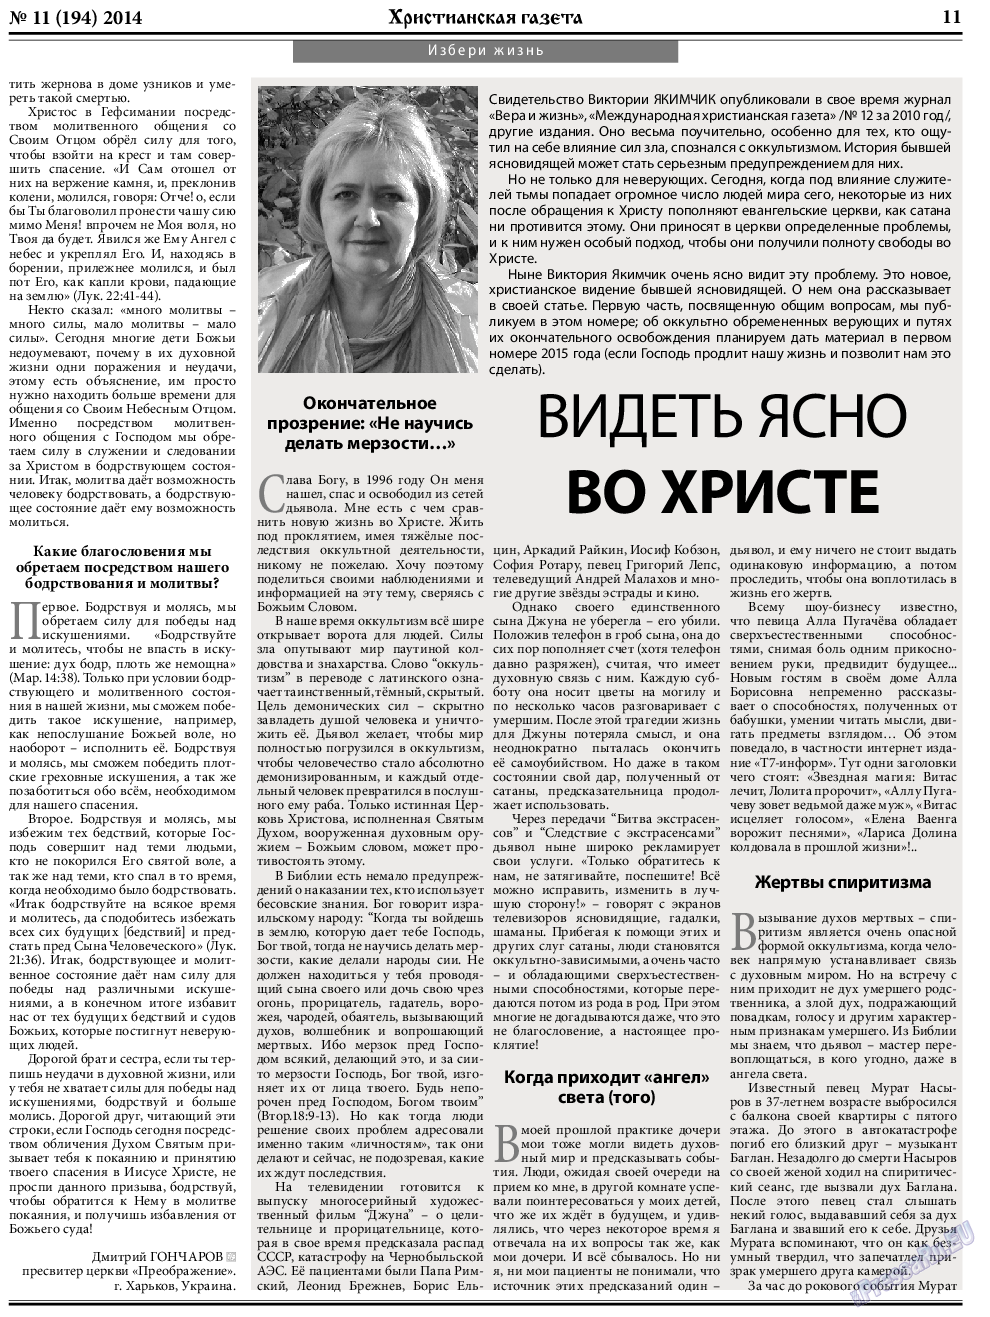 Христианская газета (газета). 2014 год, номер 11, стр. 11